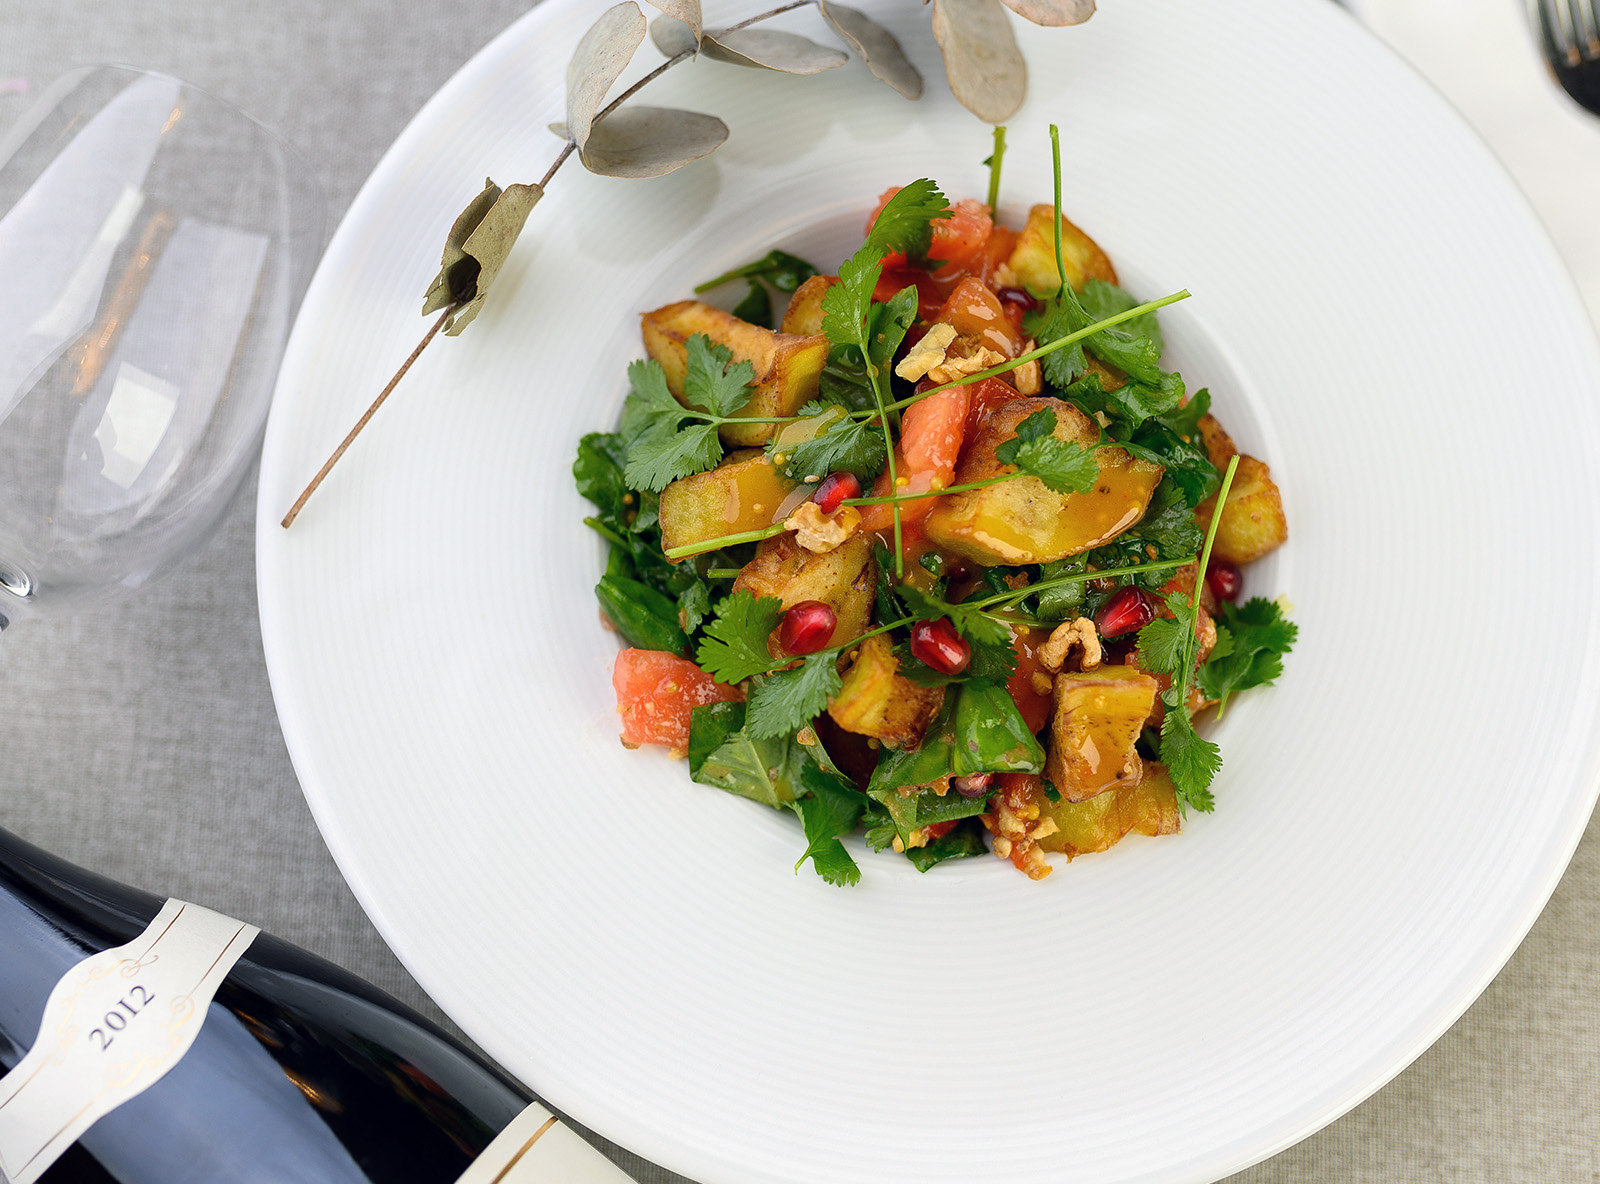 Салат с хрустящими баклажанами и печёными овощами, приправленный оливковым маслом и винным уксусом